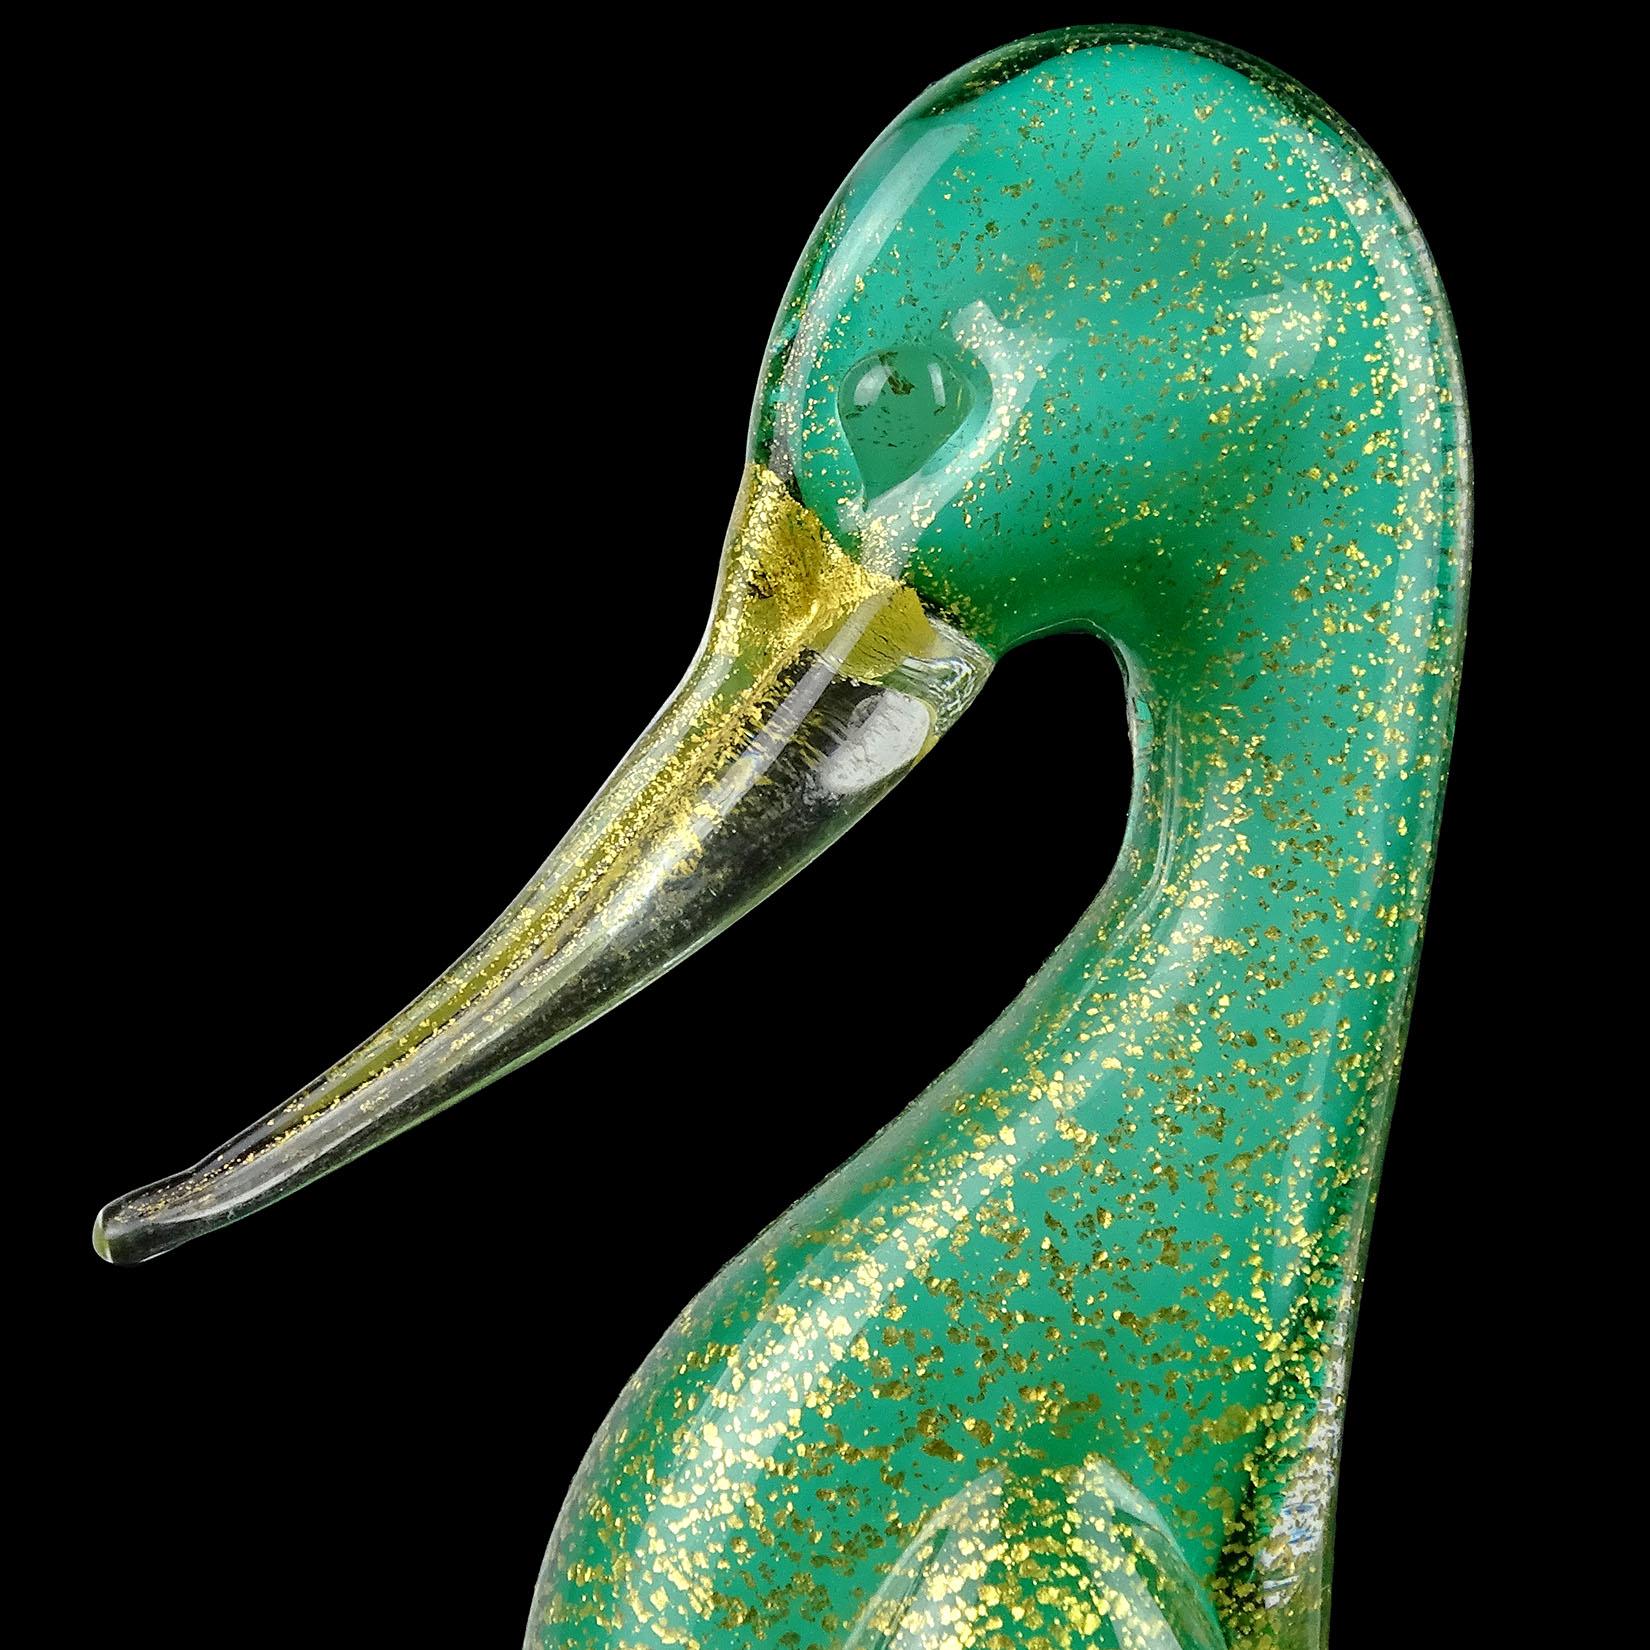 Magnifique figurine / sculpture vintage en verre soufflé à la main de Murano, vert et mouchetures d'or, représentant un canard. Attribué à Archimede Seguso / Seguso Vetri D' Art. L'oiseau est composé d'une couche intérieure blanche, d'une couche